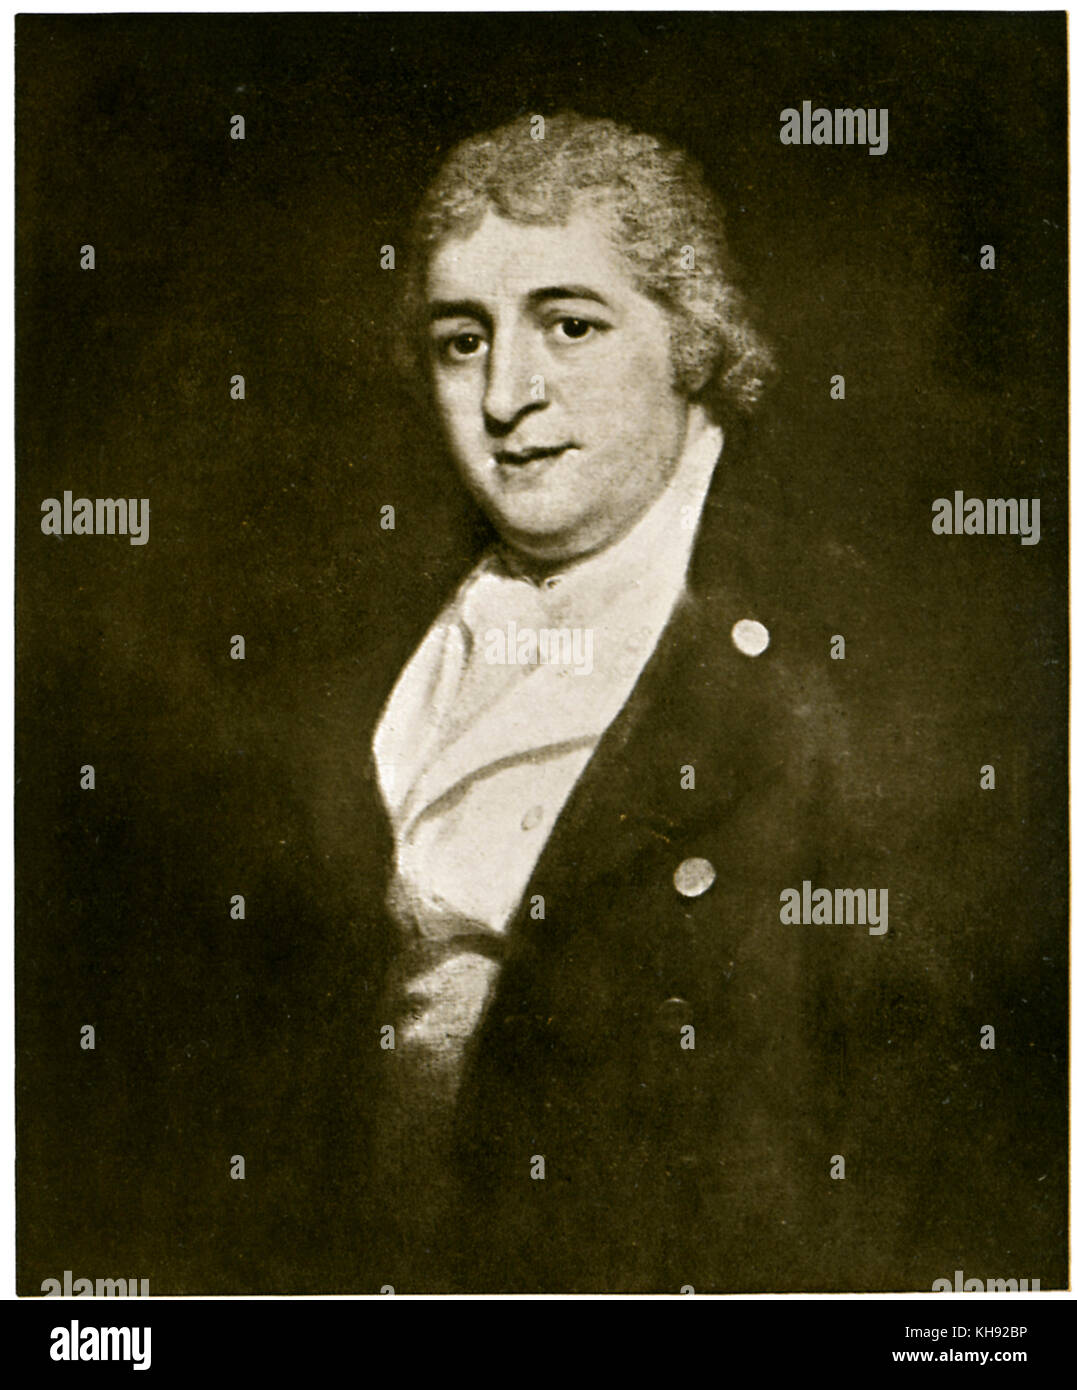 Charles Dibdin - britische Musiker, Dramatiker, Schriftsteller, Schauspieler und Liedermacher. Nach dem Gemälde von 1799. Vom 4. März 1745? - 25. Juli 1814. Stockfoto